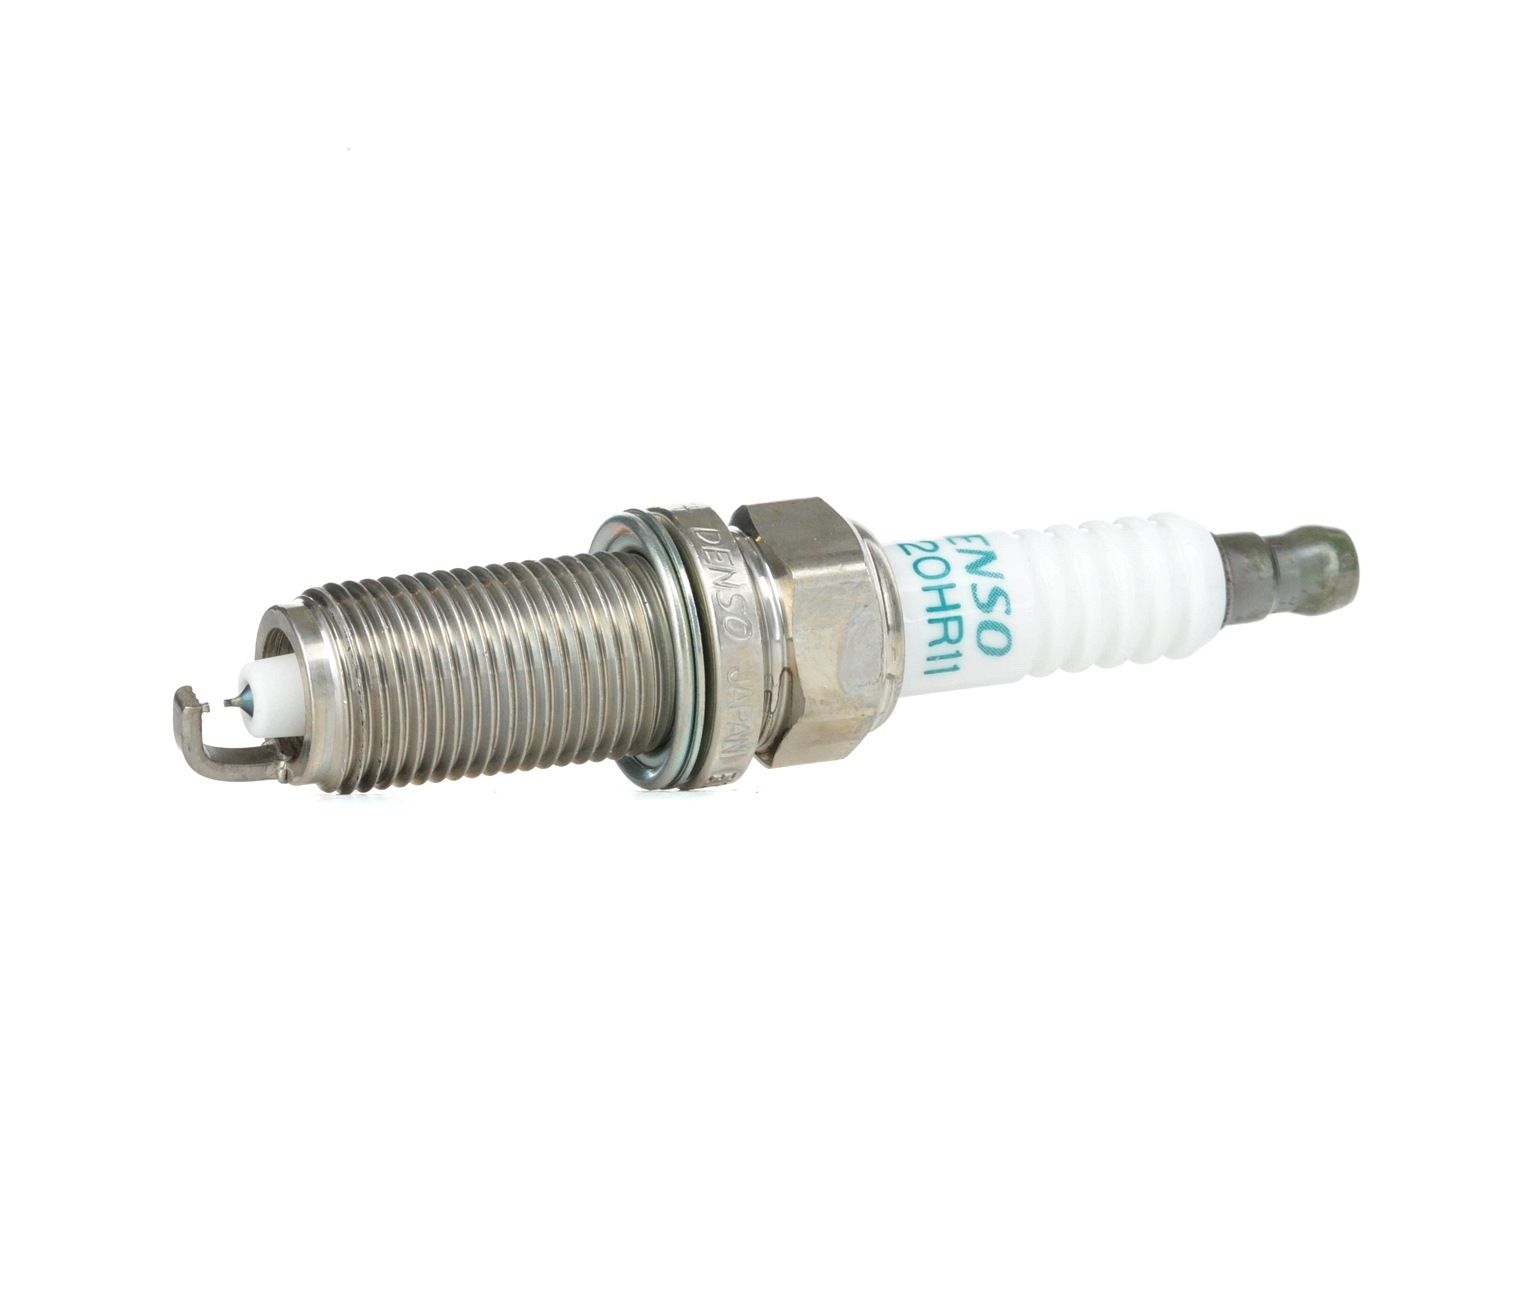 Buy cheap OEM parts: Spark Plug DENSO Super Ignition Plug FK20HR11